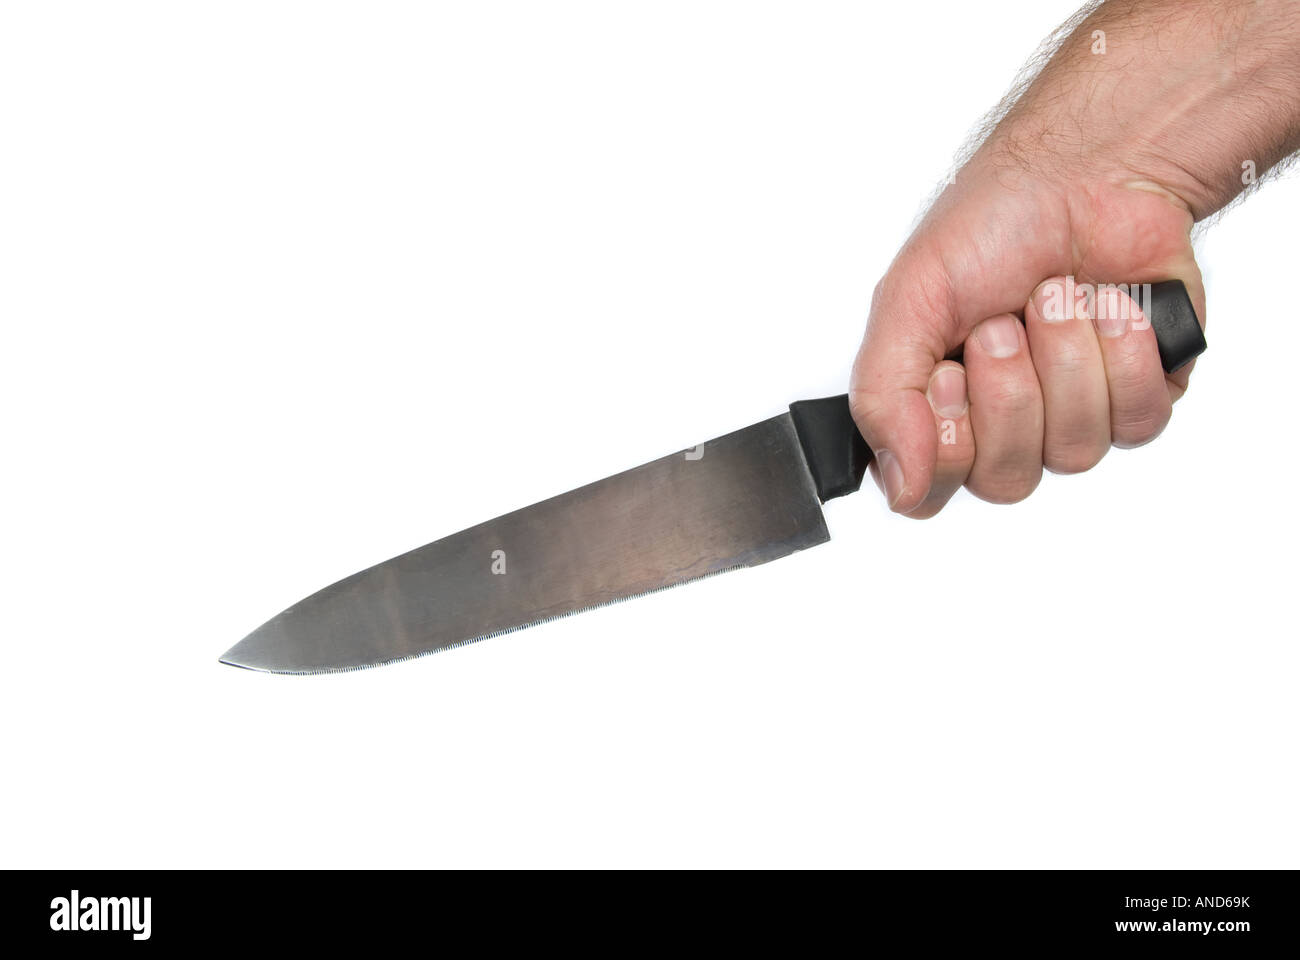 Madrid Mauler | Butcher Knife